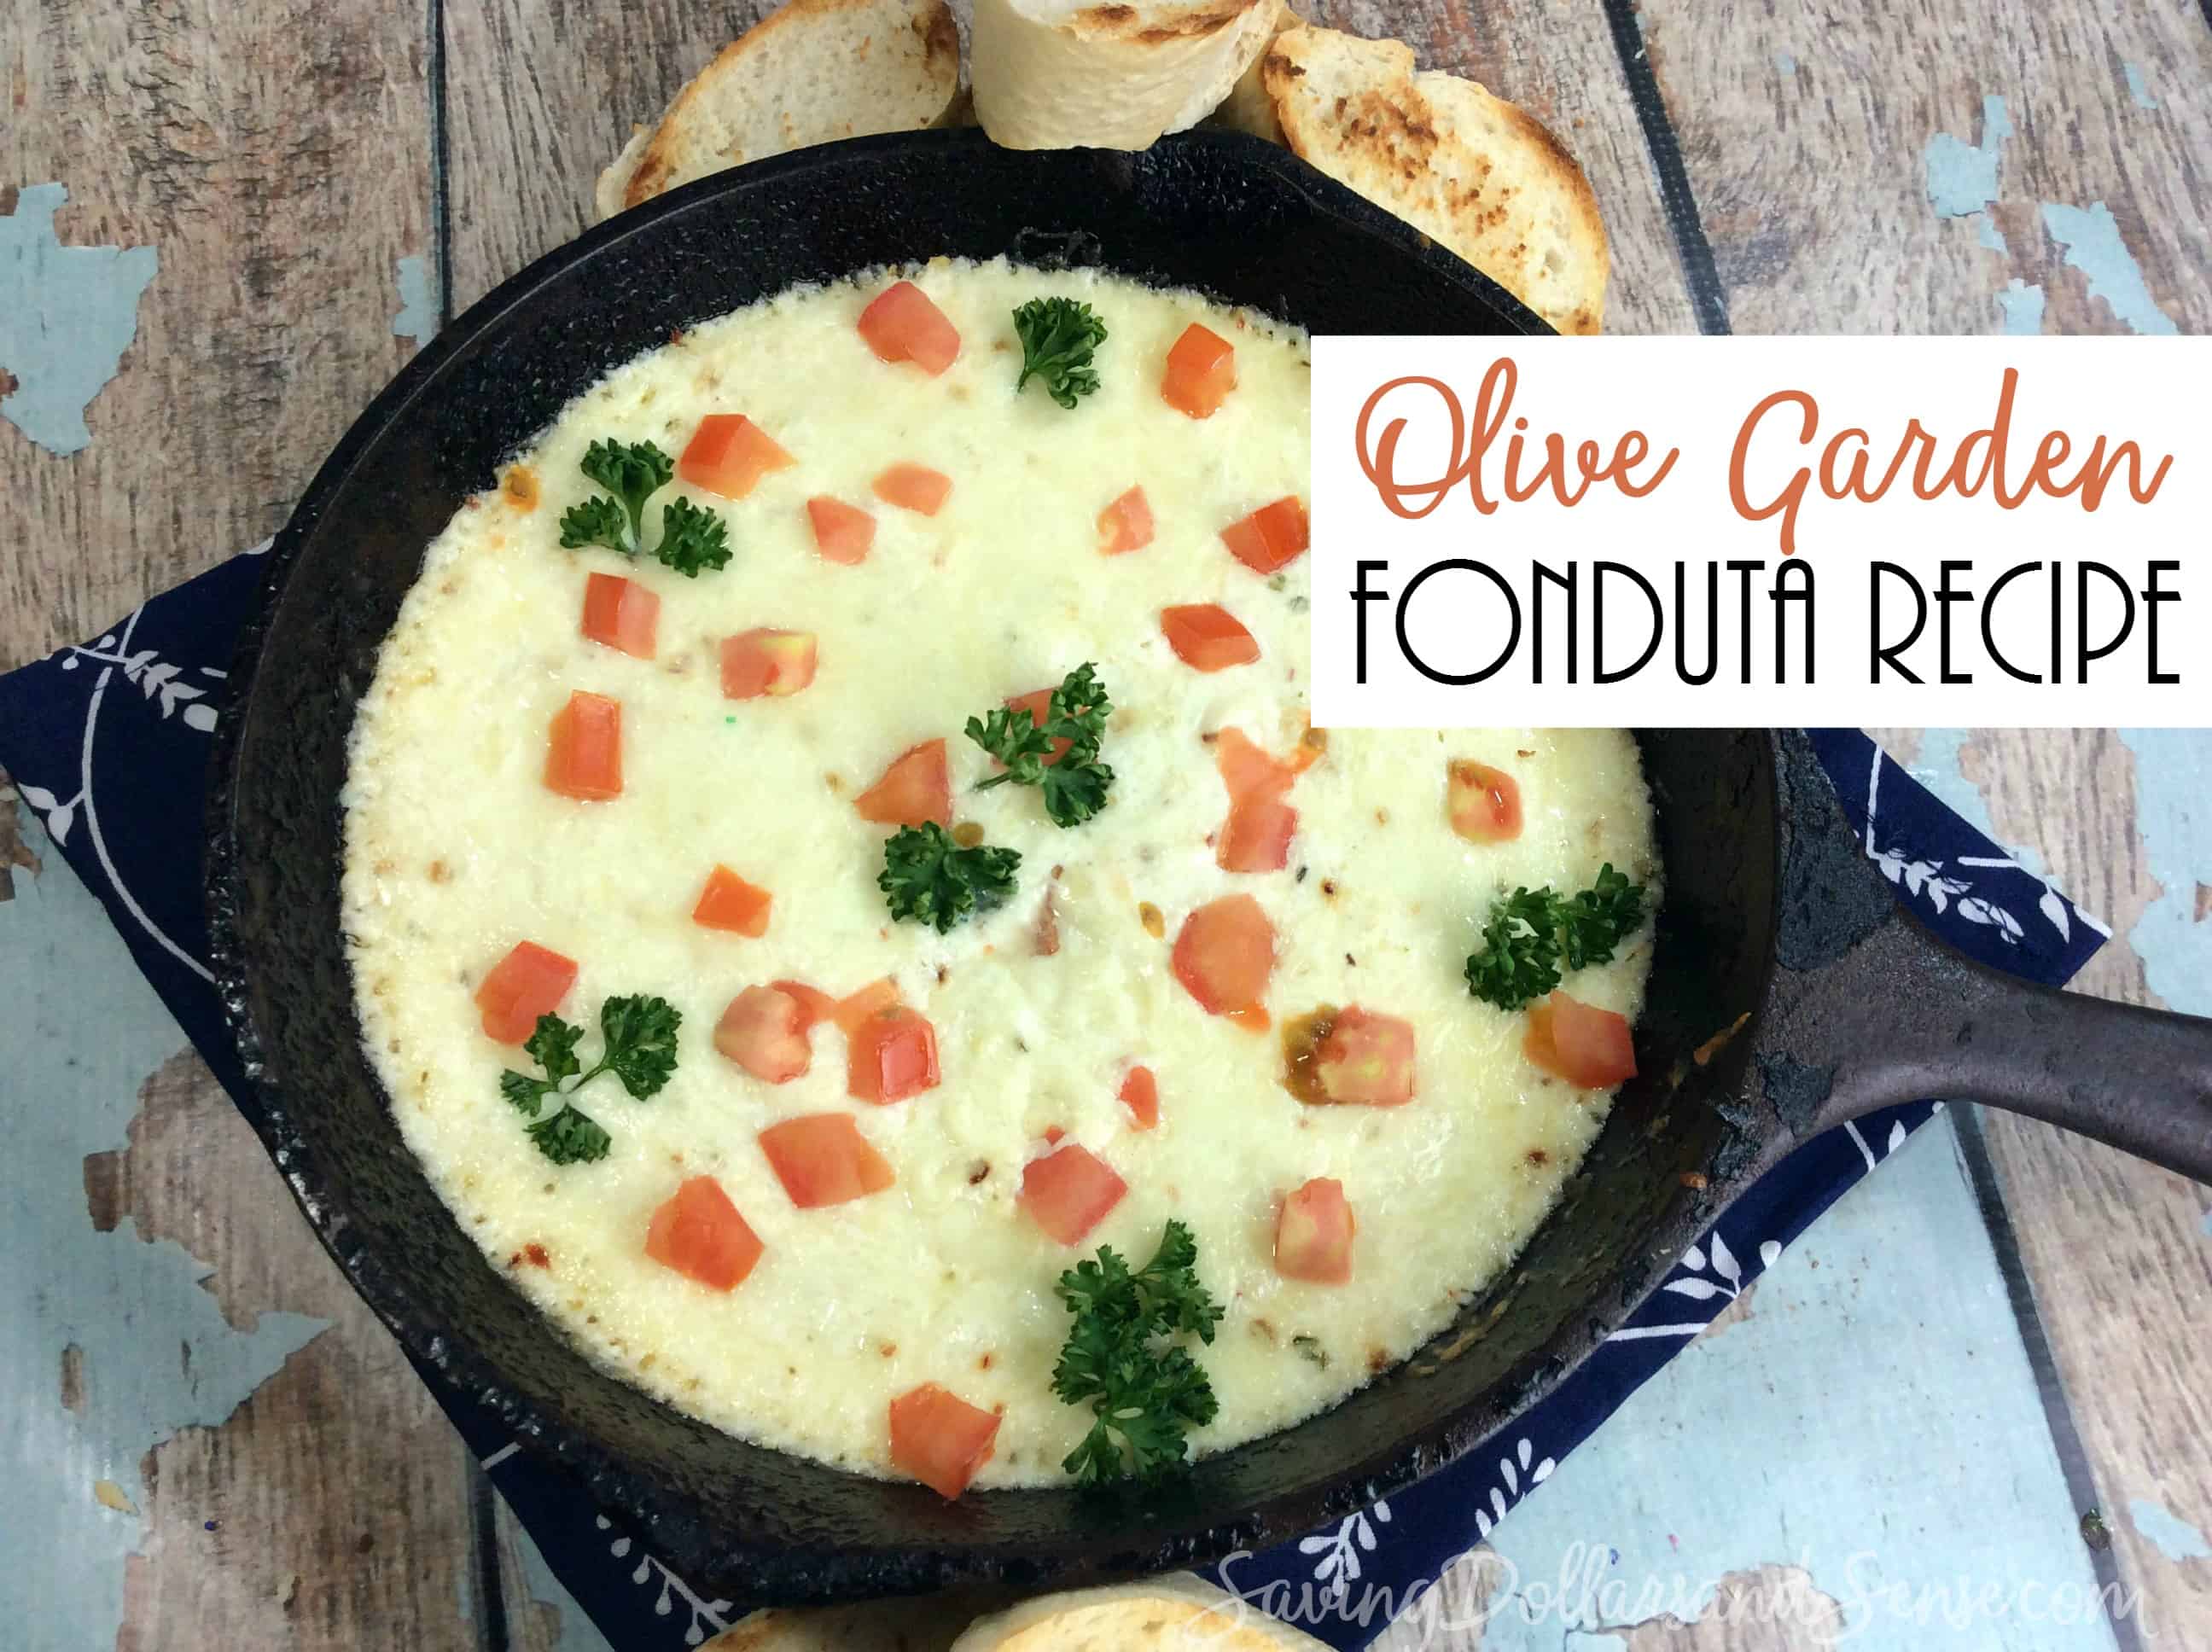 Olive Garden Cheese Fonduta Recipe